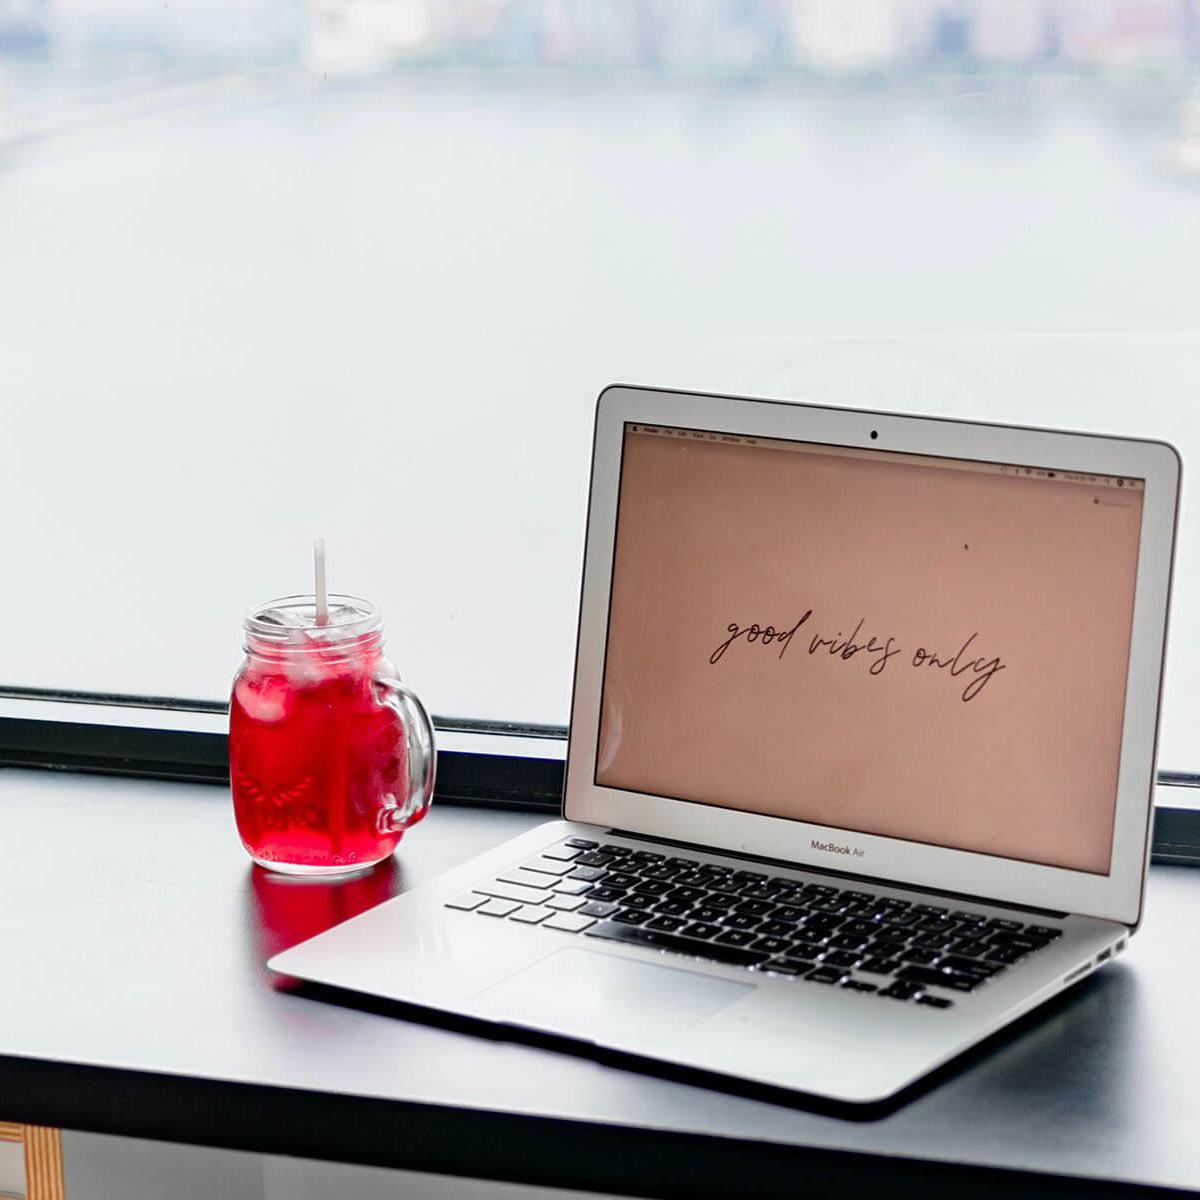 Notebook eines Bloggers mit rotem Getränk